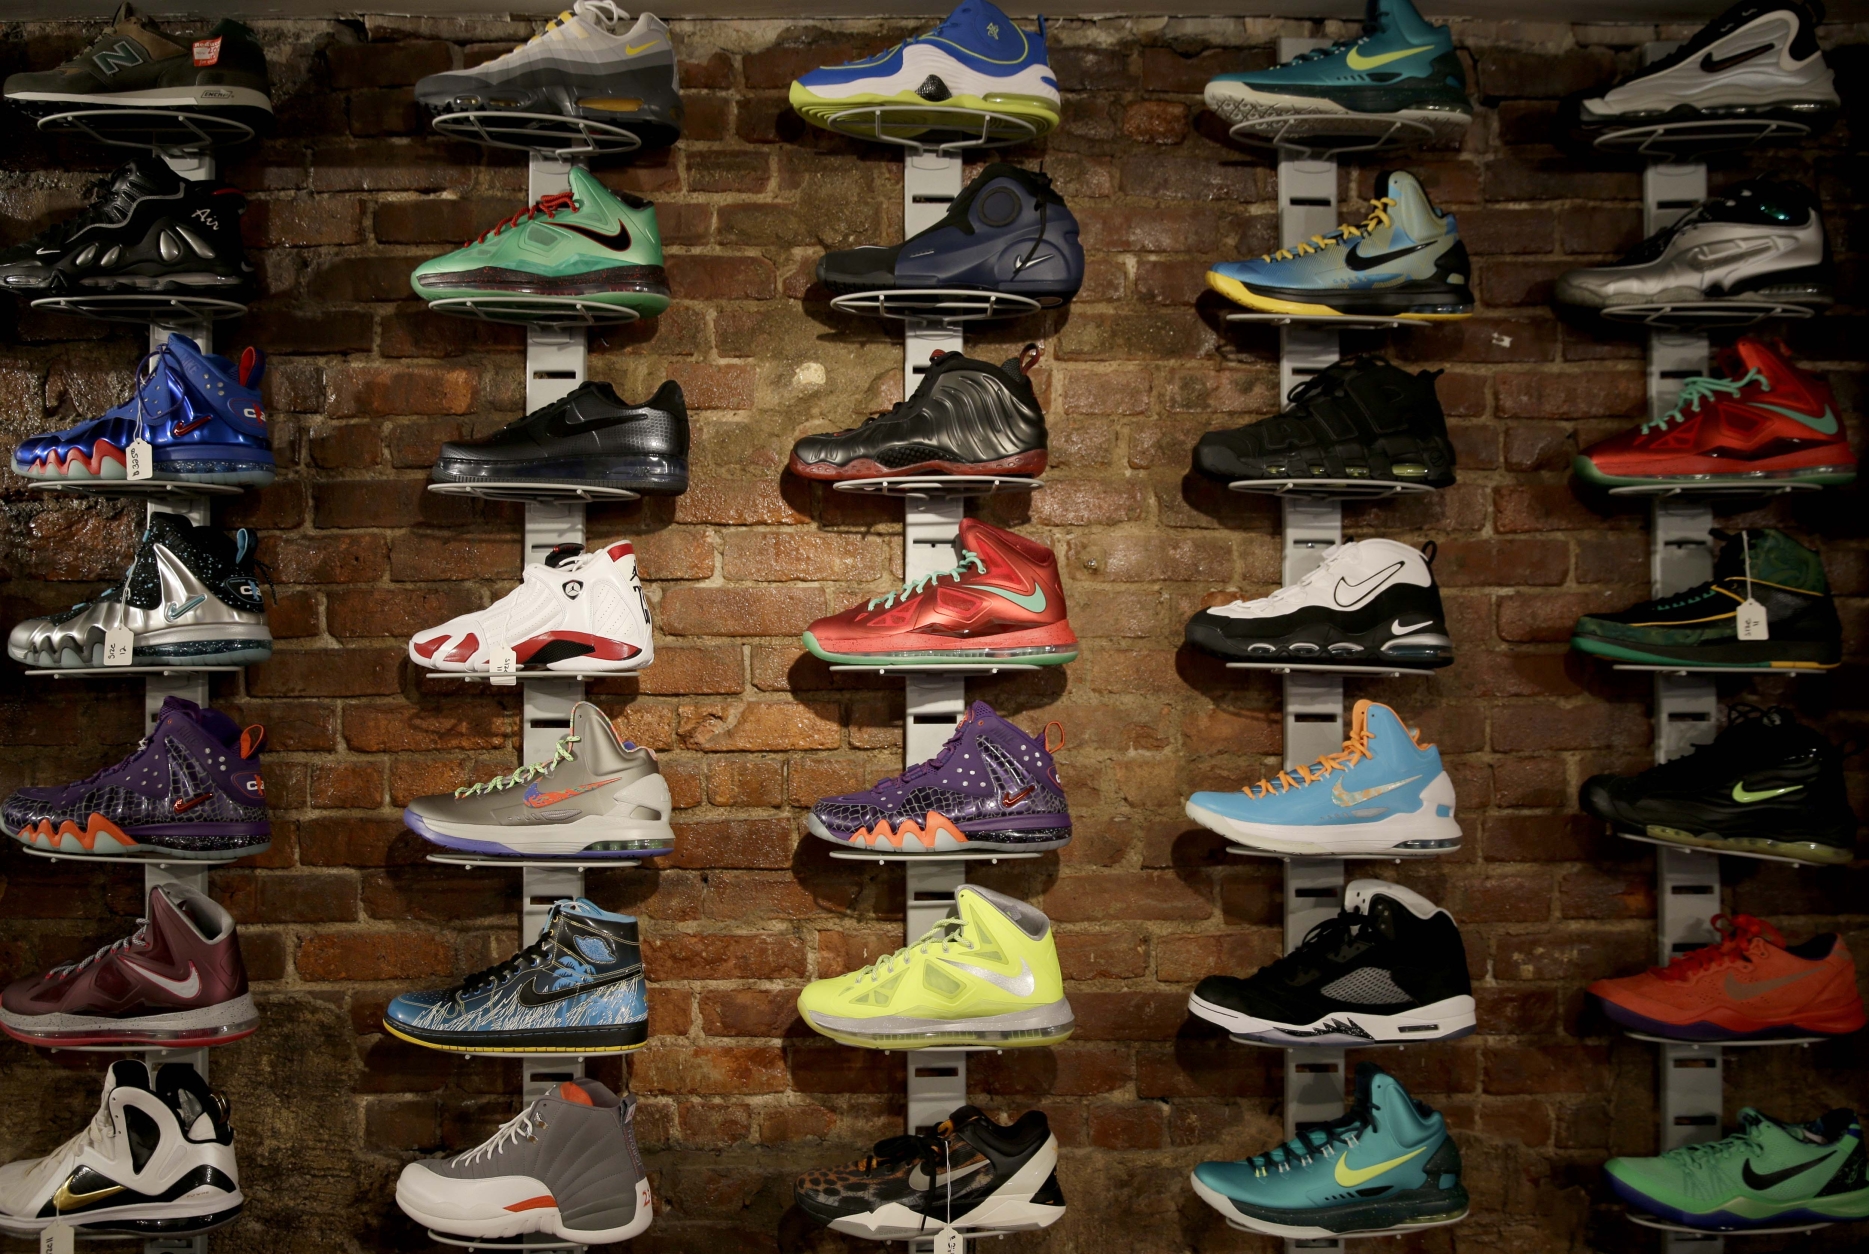 Kinh nghiệm kinh doanh giày Sneaker online sẽ giúp bạn nắm bắt được xu hướng thị trường và sở thích của khách hàng. Từ đó, bạn sẽ tìm được chiến lược kinh doanh phù hợp và hiệu quả cũng như nâng cao doanh số bán hàng. Hãy xem hình ảnh và học hỏi từ những kinh nghiệm kinh doanh giày Sneaker online thành công!